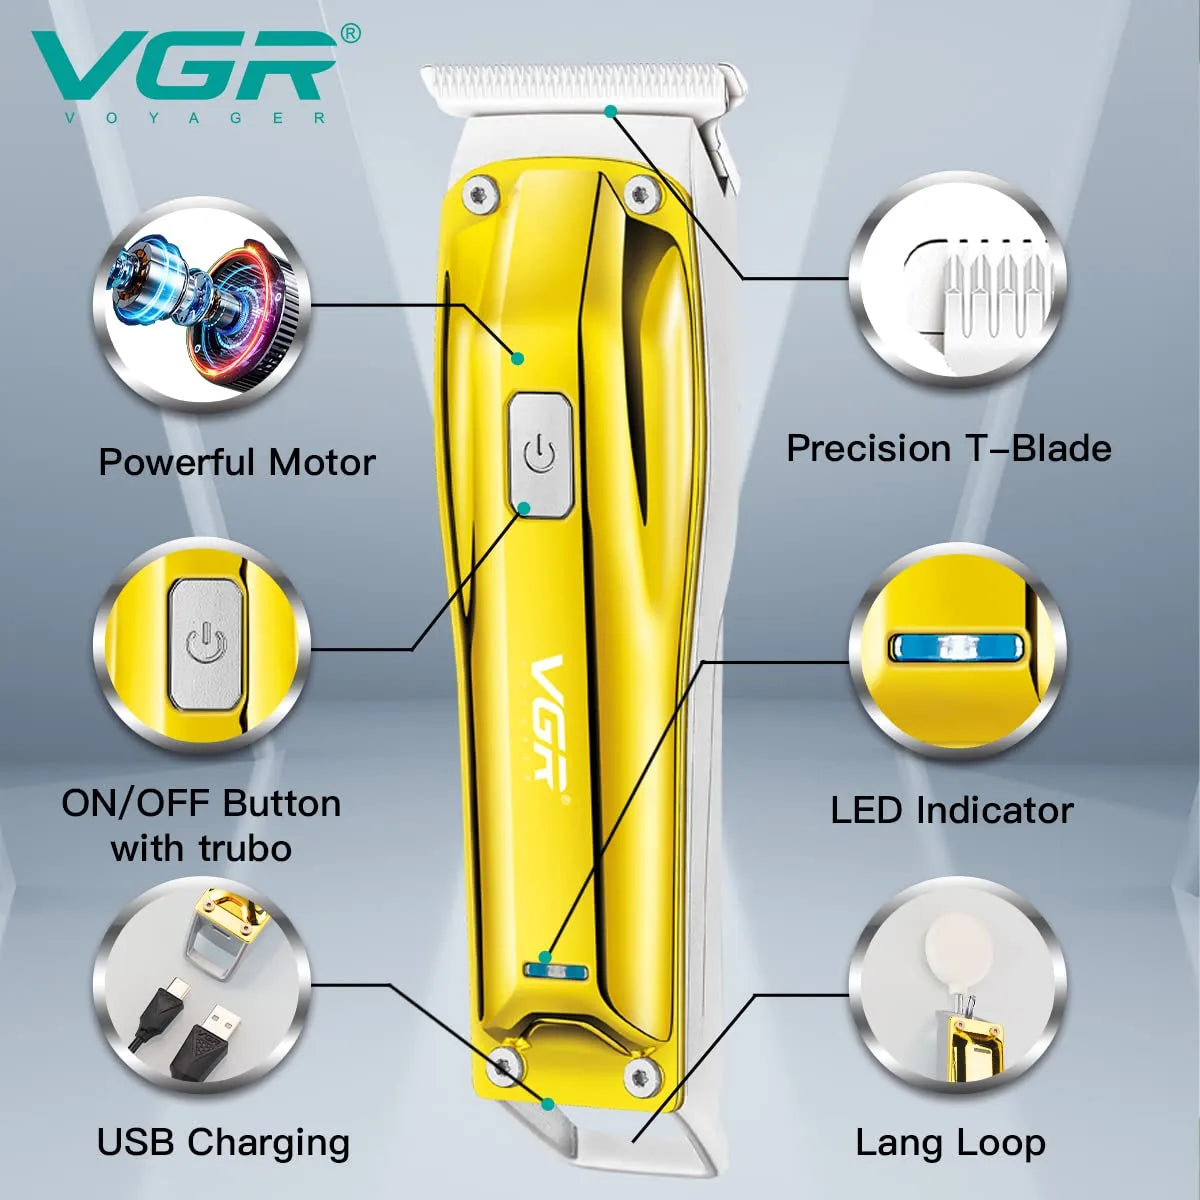 VGR, VGRindia, VGRofficial, VGR V-955